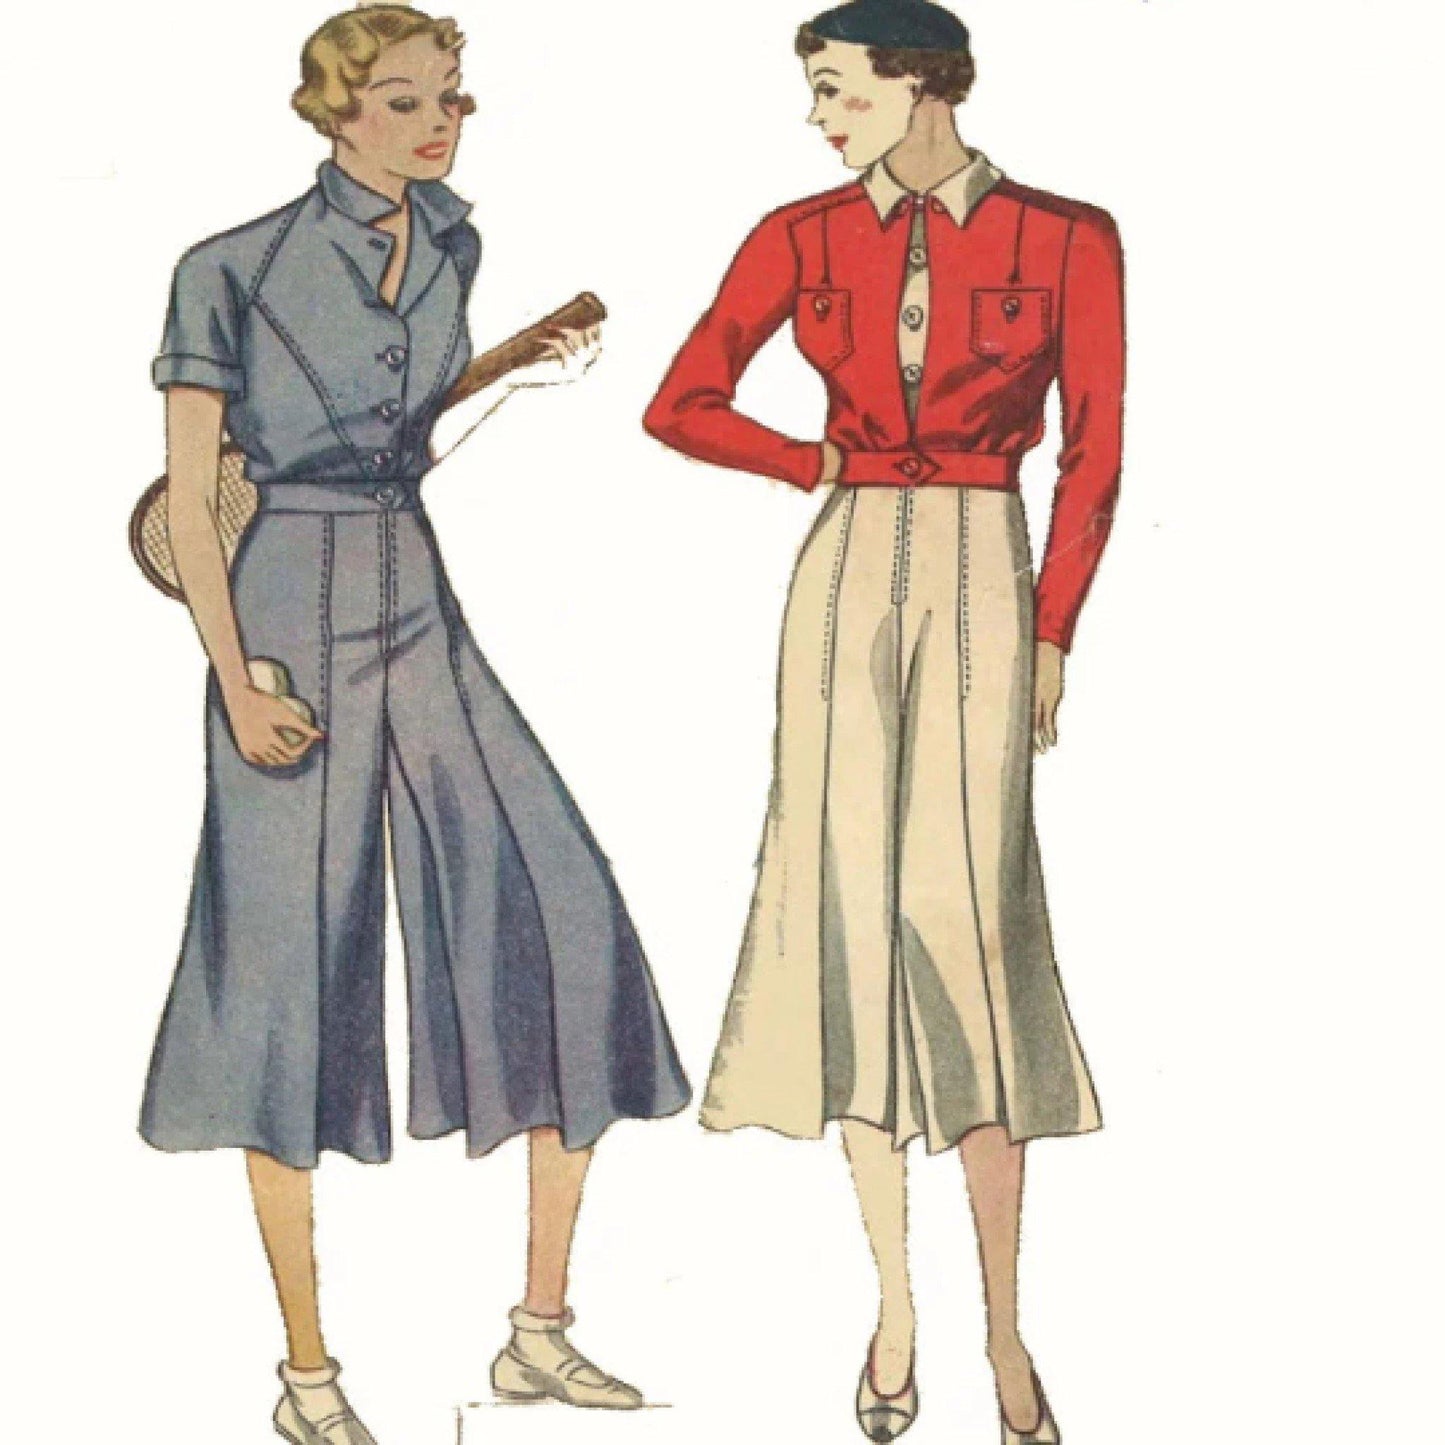 Women wearing a split skirt